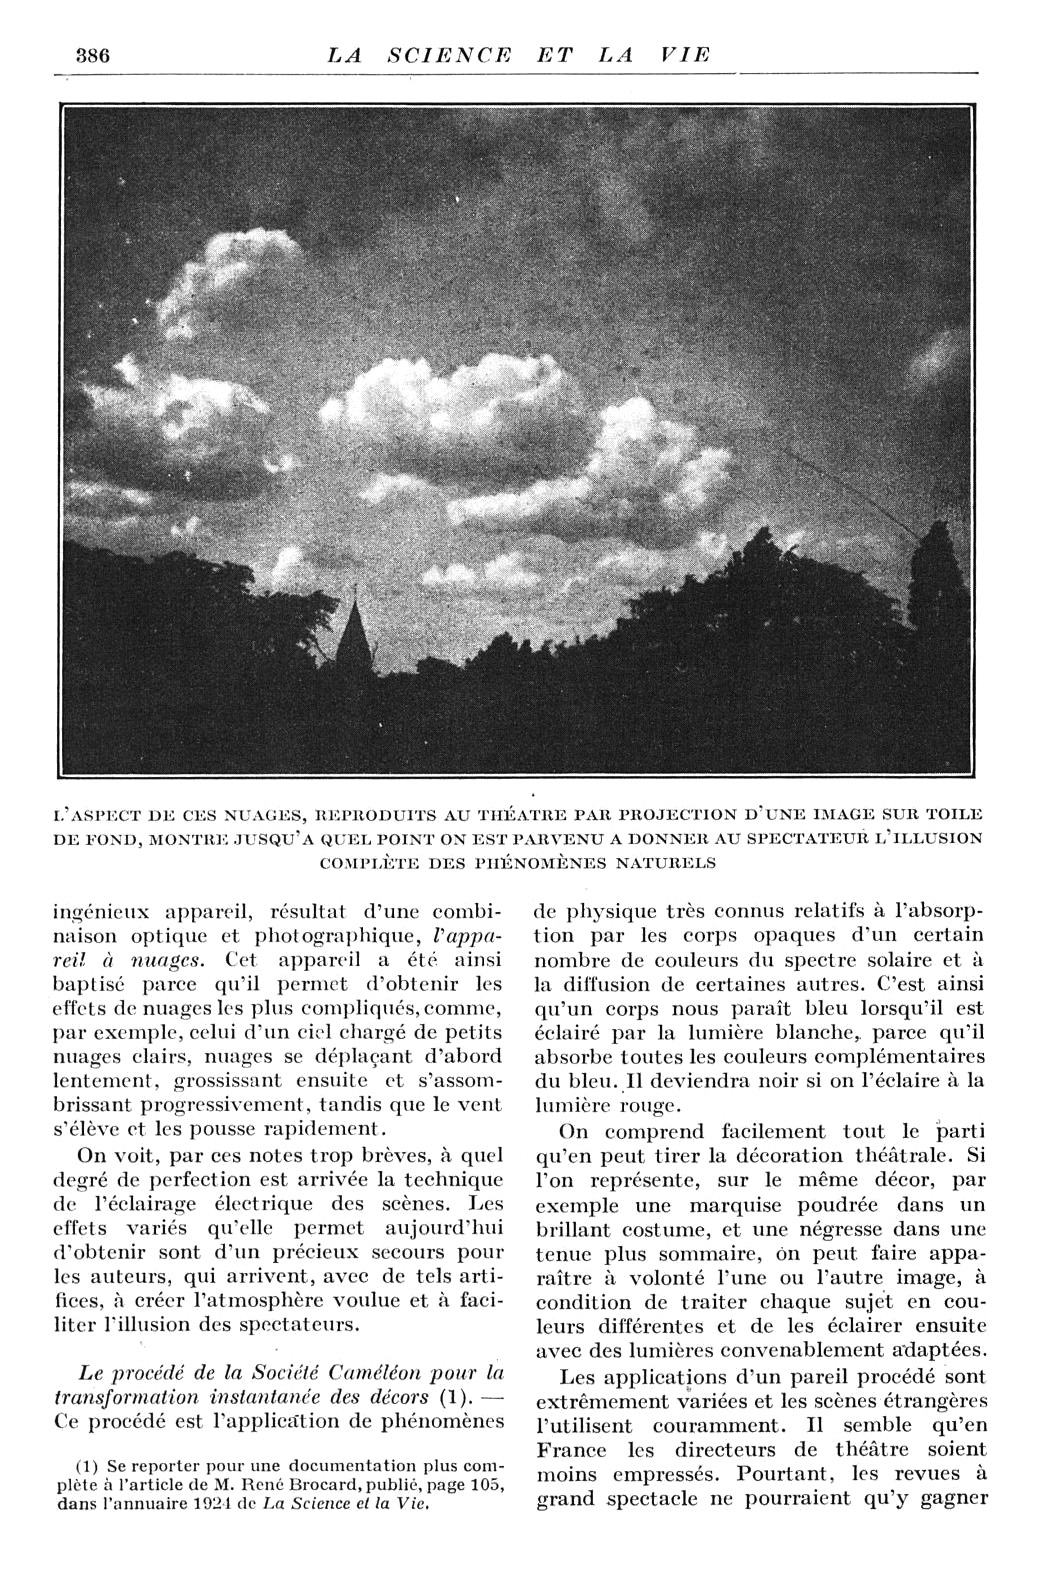 Résultat obtenu grâce à l’appareil à nuages, page extraite du reportage sur l’Exposition des Arts décoratifs, La Science et la Vie, mai 1925, p. 386. CNAM